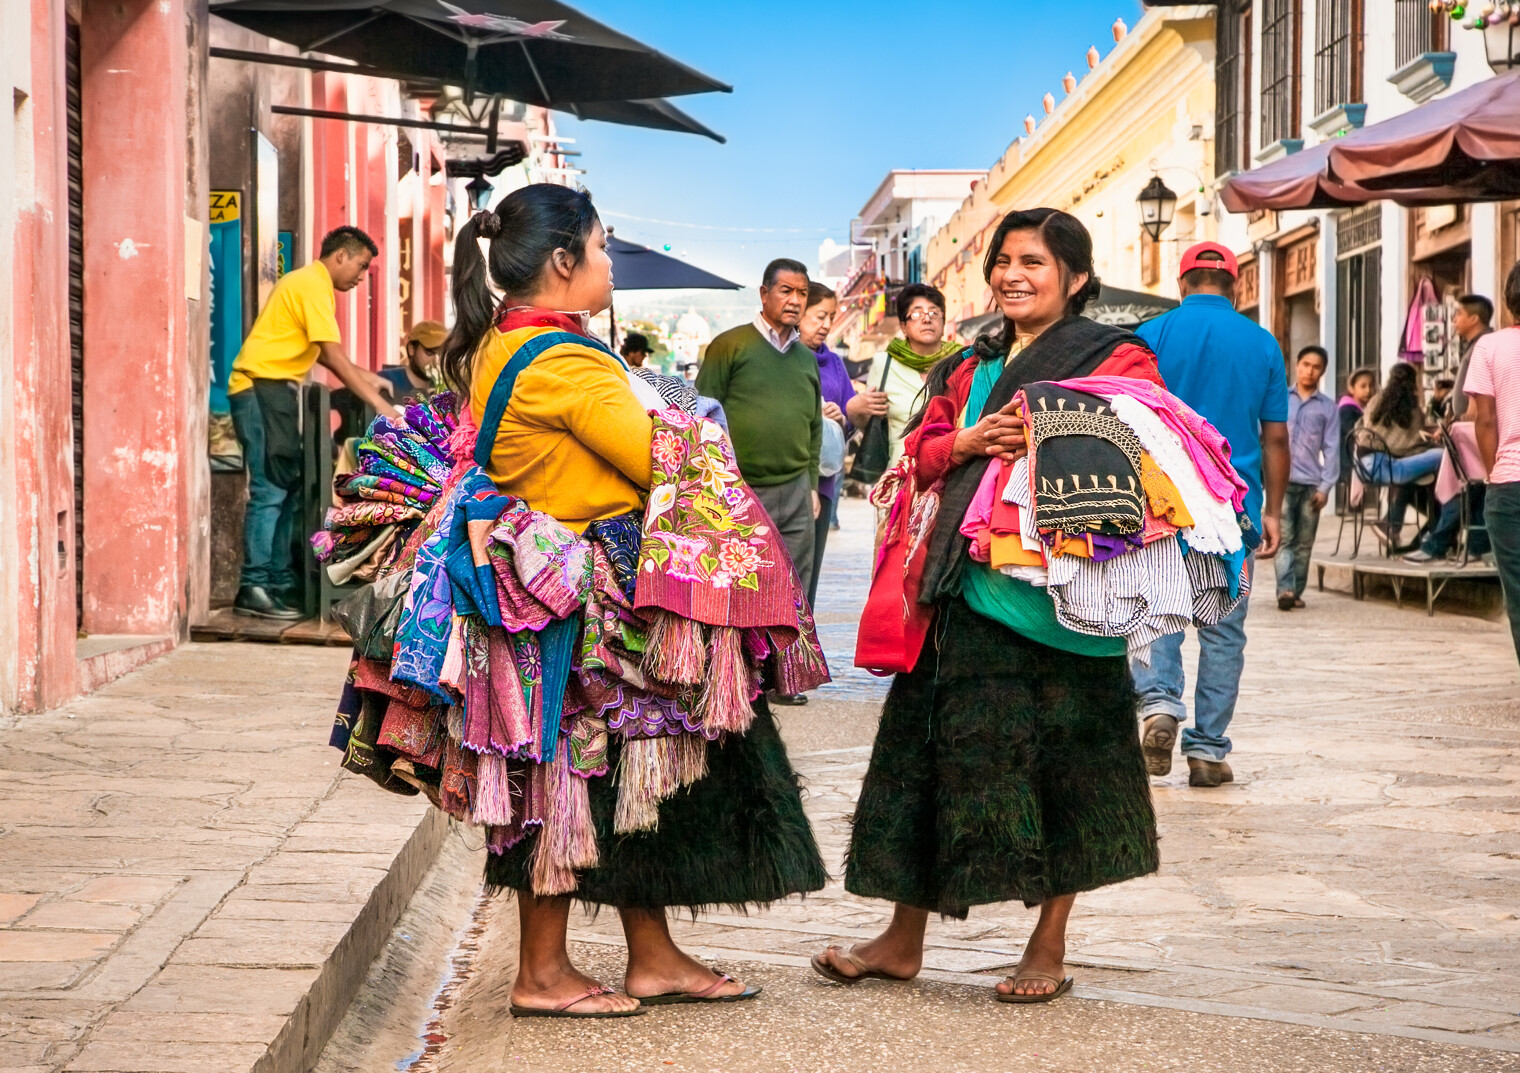 Une rue de la ville de San Cristobal de las Casas avec ses habitants